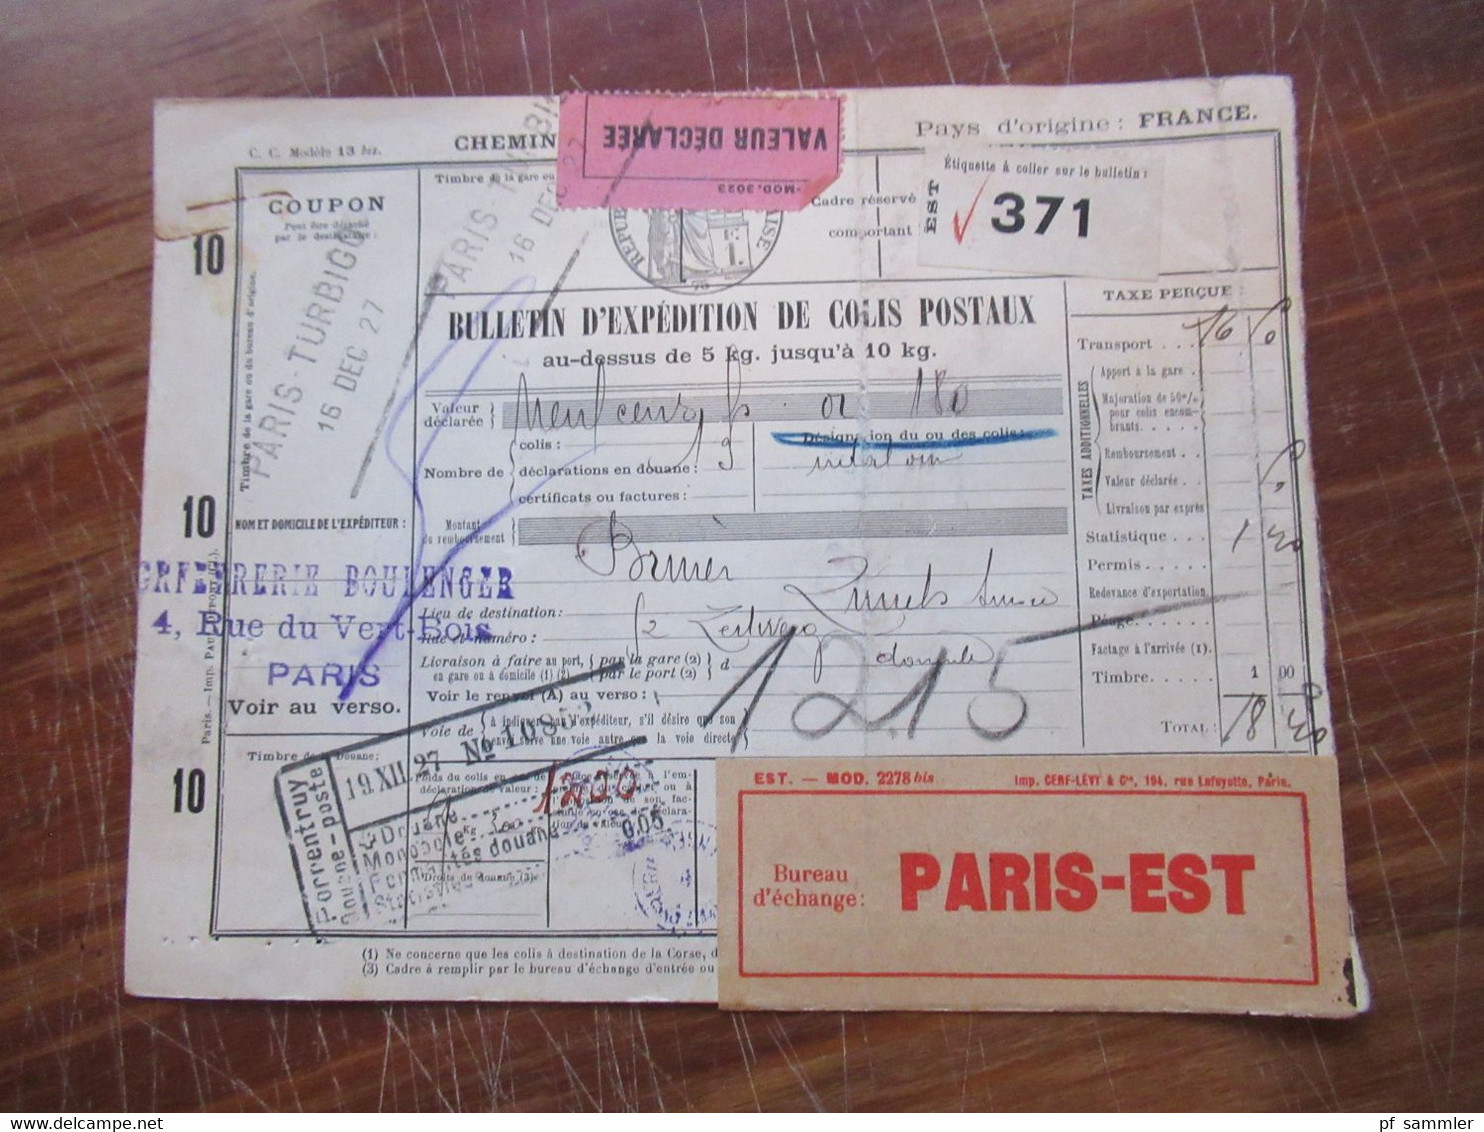 Frankreich 1927 Auslandspaketkarte Colis Postaux In Die Schweiz Valeur Declaree / Paris - Est Mit Vielen Stempeln!! - Brieven En Documenten